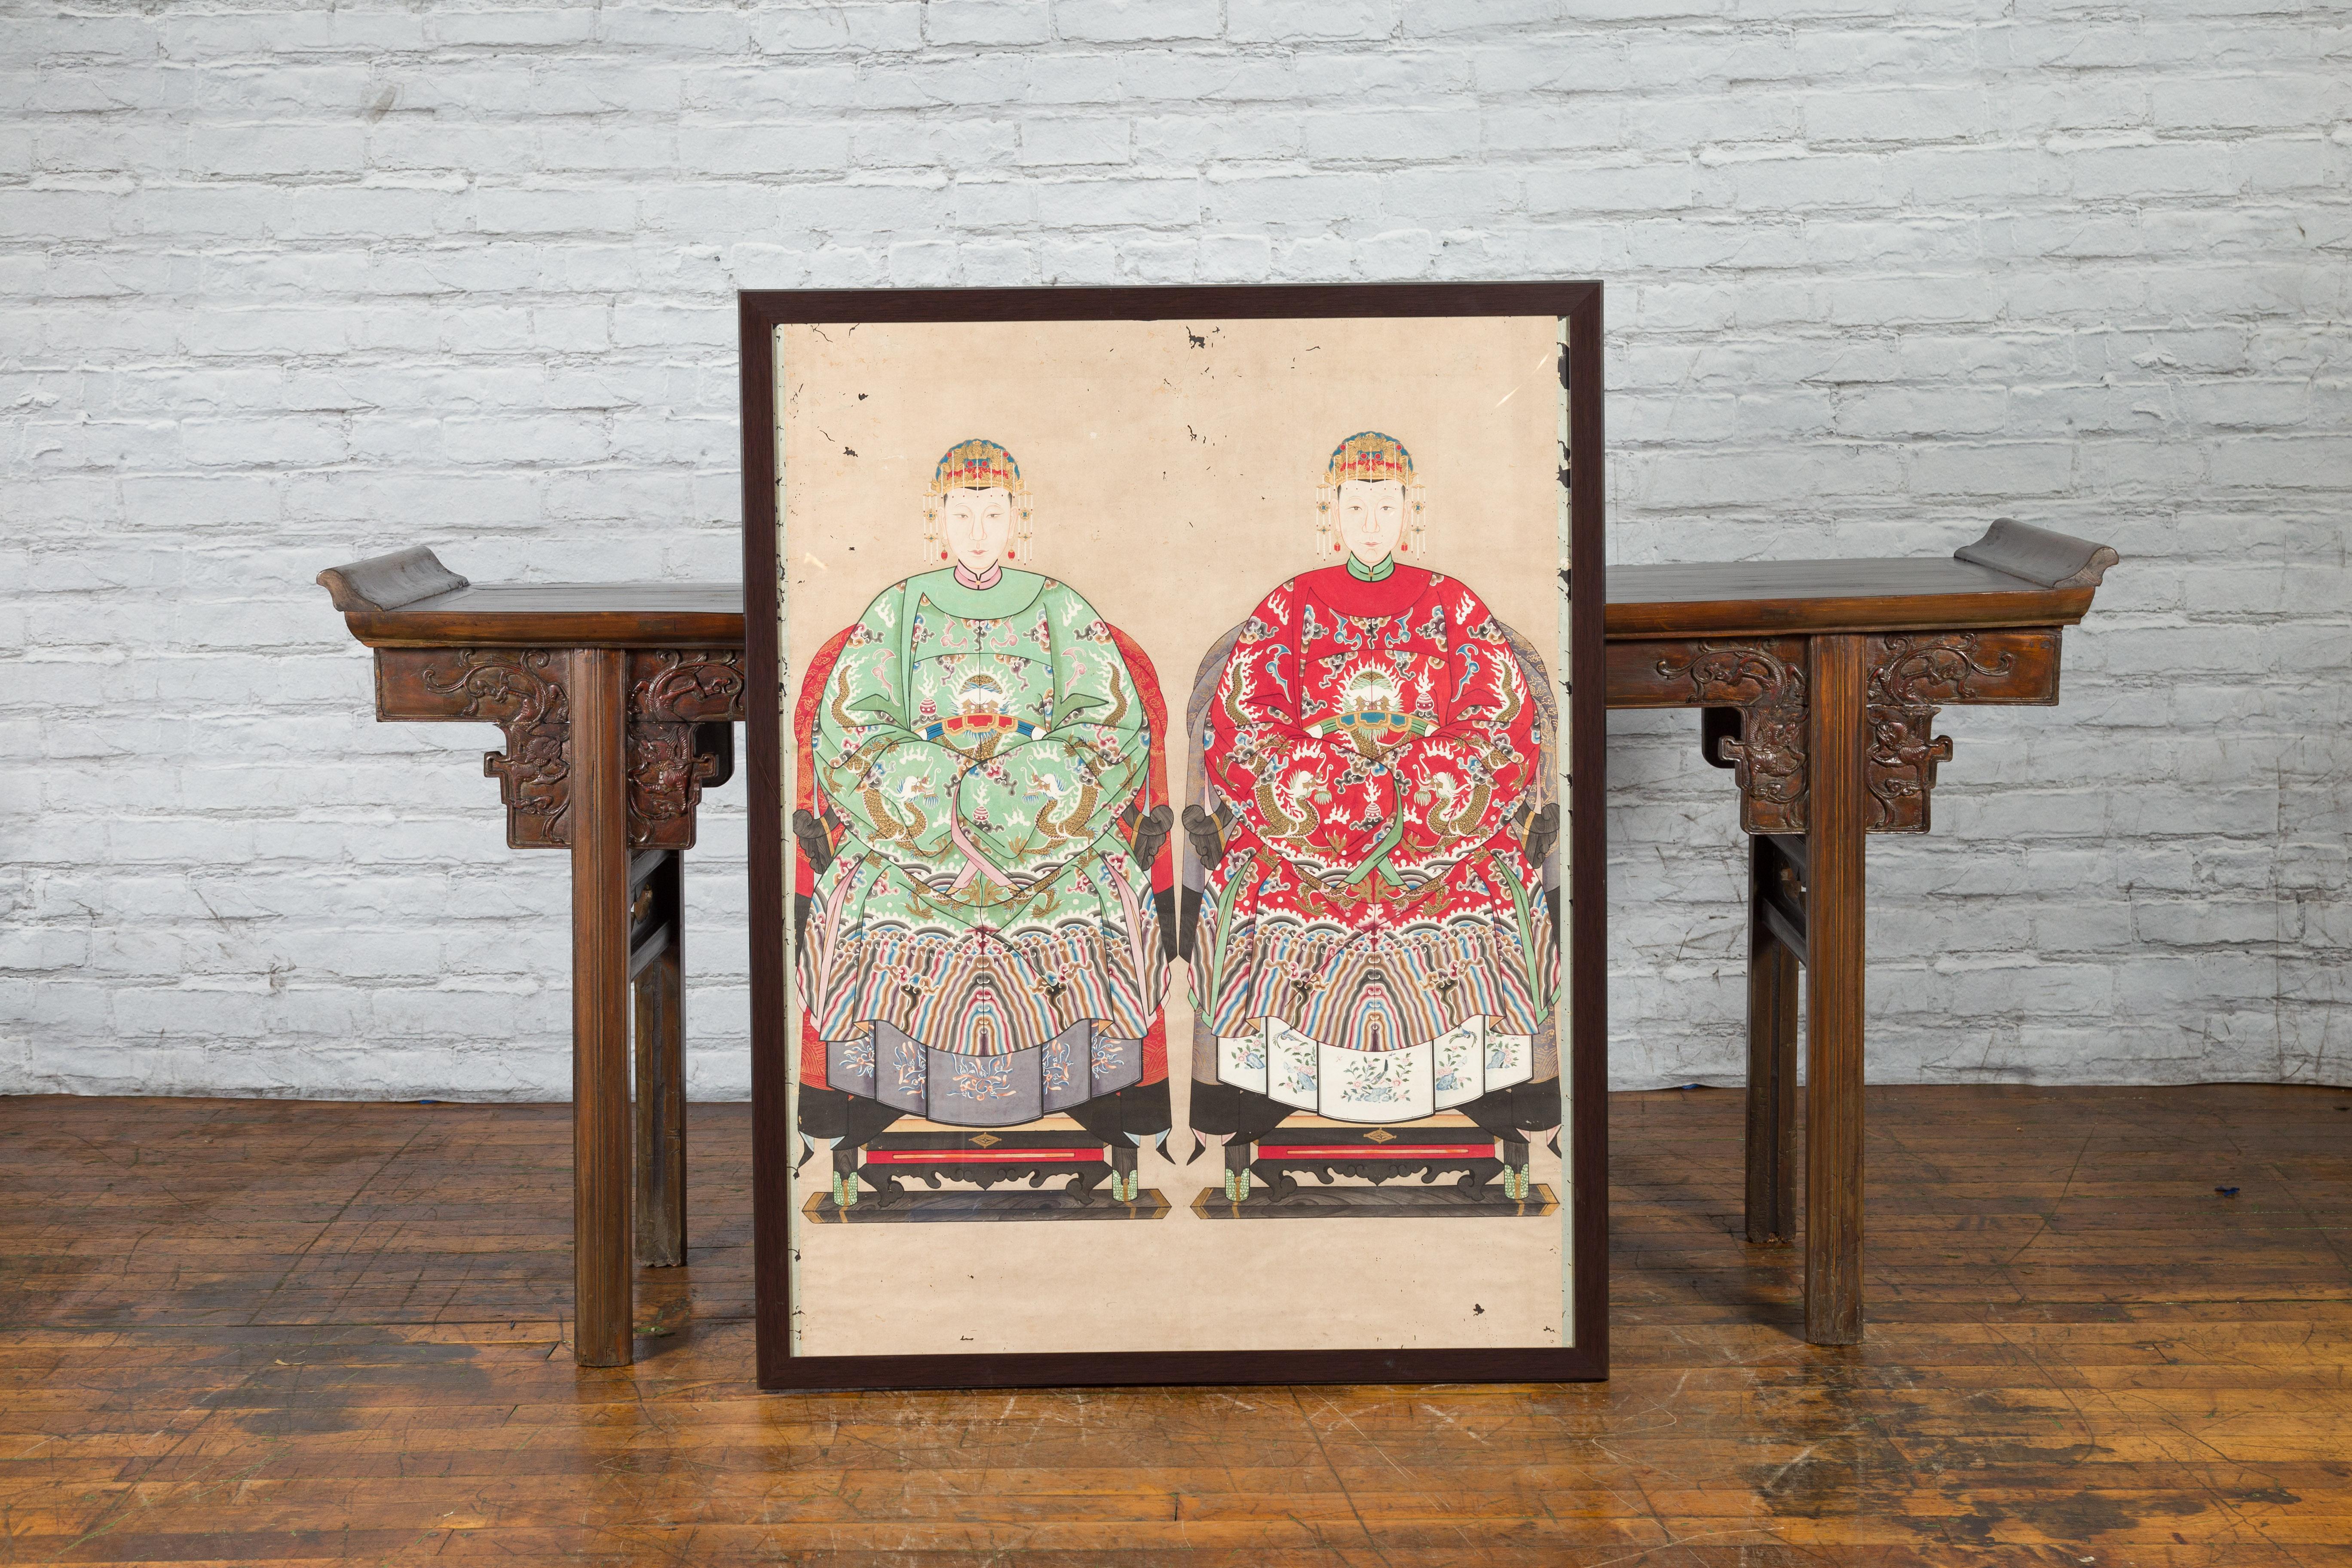 Ein gerahmtes Gemälde aus der chinesischen Qing-Dynastie aus dem 19. Jahrhundert, das ein königliches Paar mit Drachenmotiven auf einer Leinenleinwand zeigt. Dieses in China während der Qing-Dynastie geschaffene, individuell gerahmte Gemälde zeigt